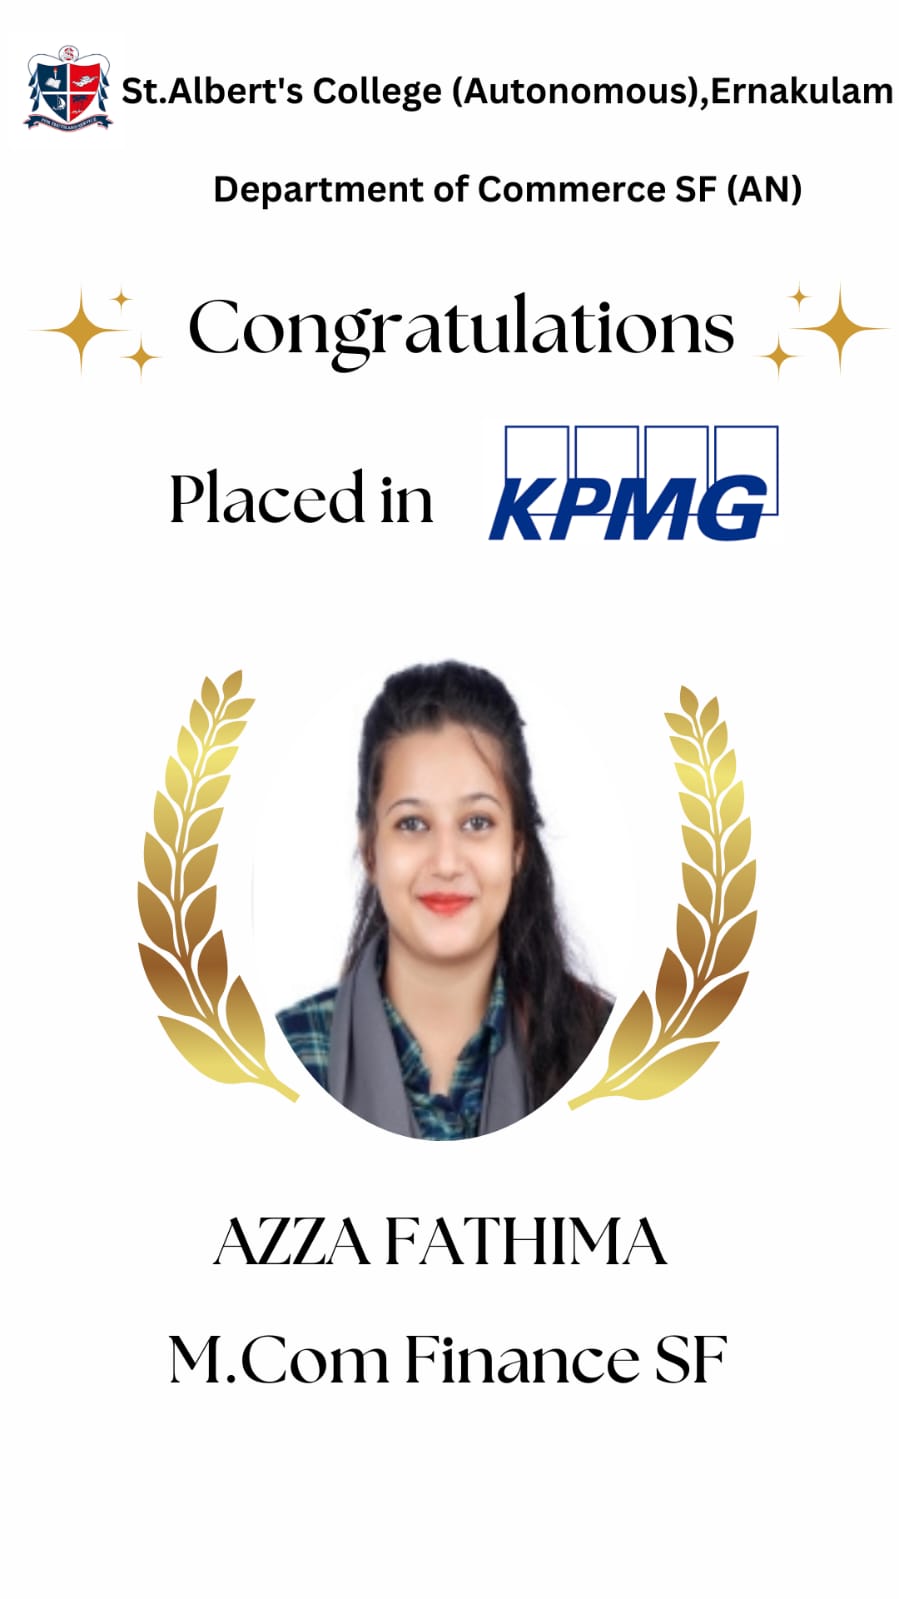 Congratulations AZZA FATHIMA